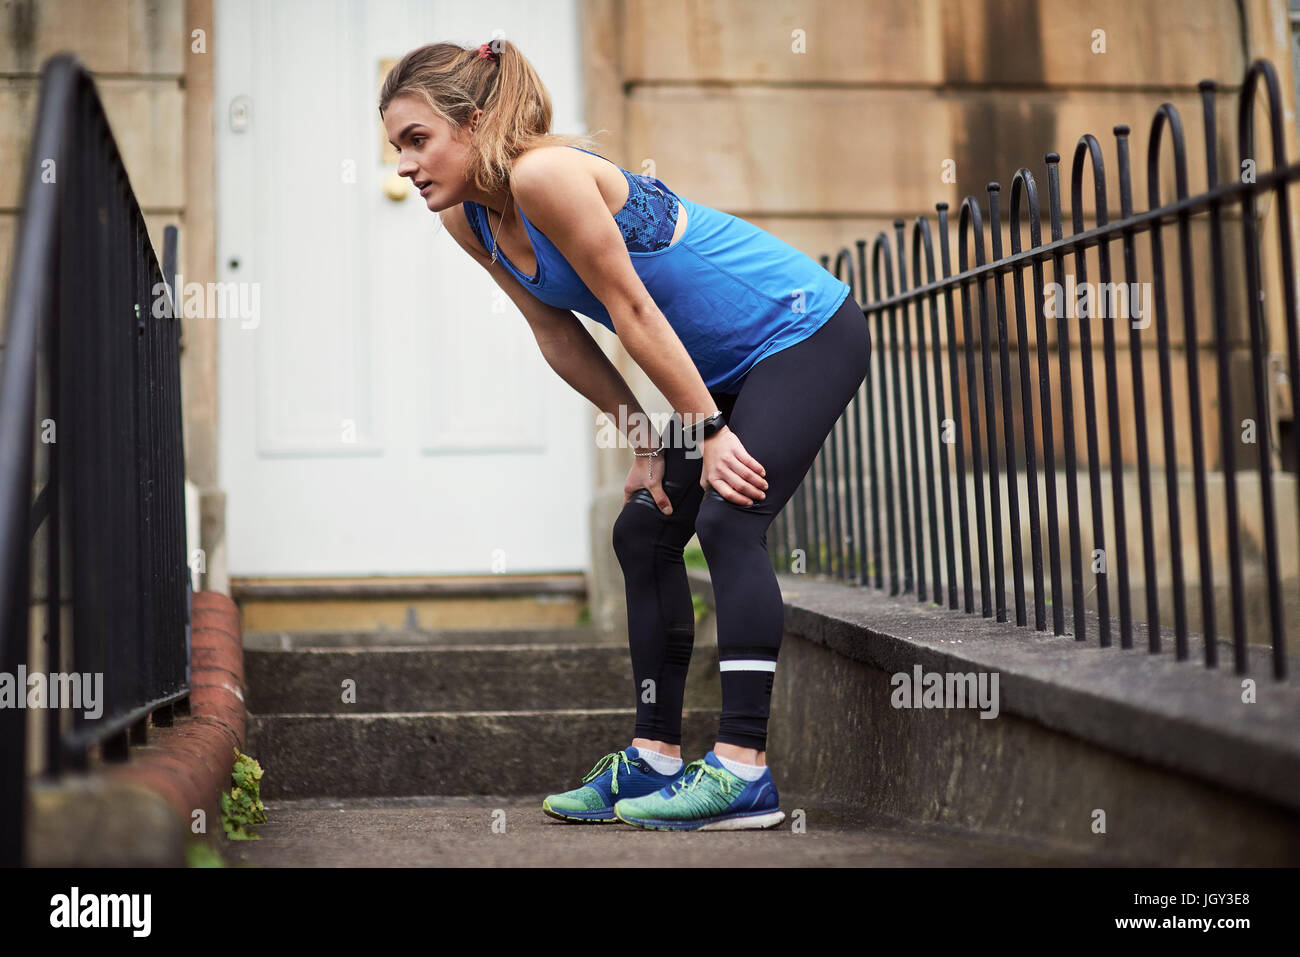 Erschöpfte junge weibliche Läufer vor der Tür Stockfoto